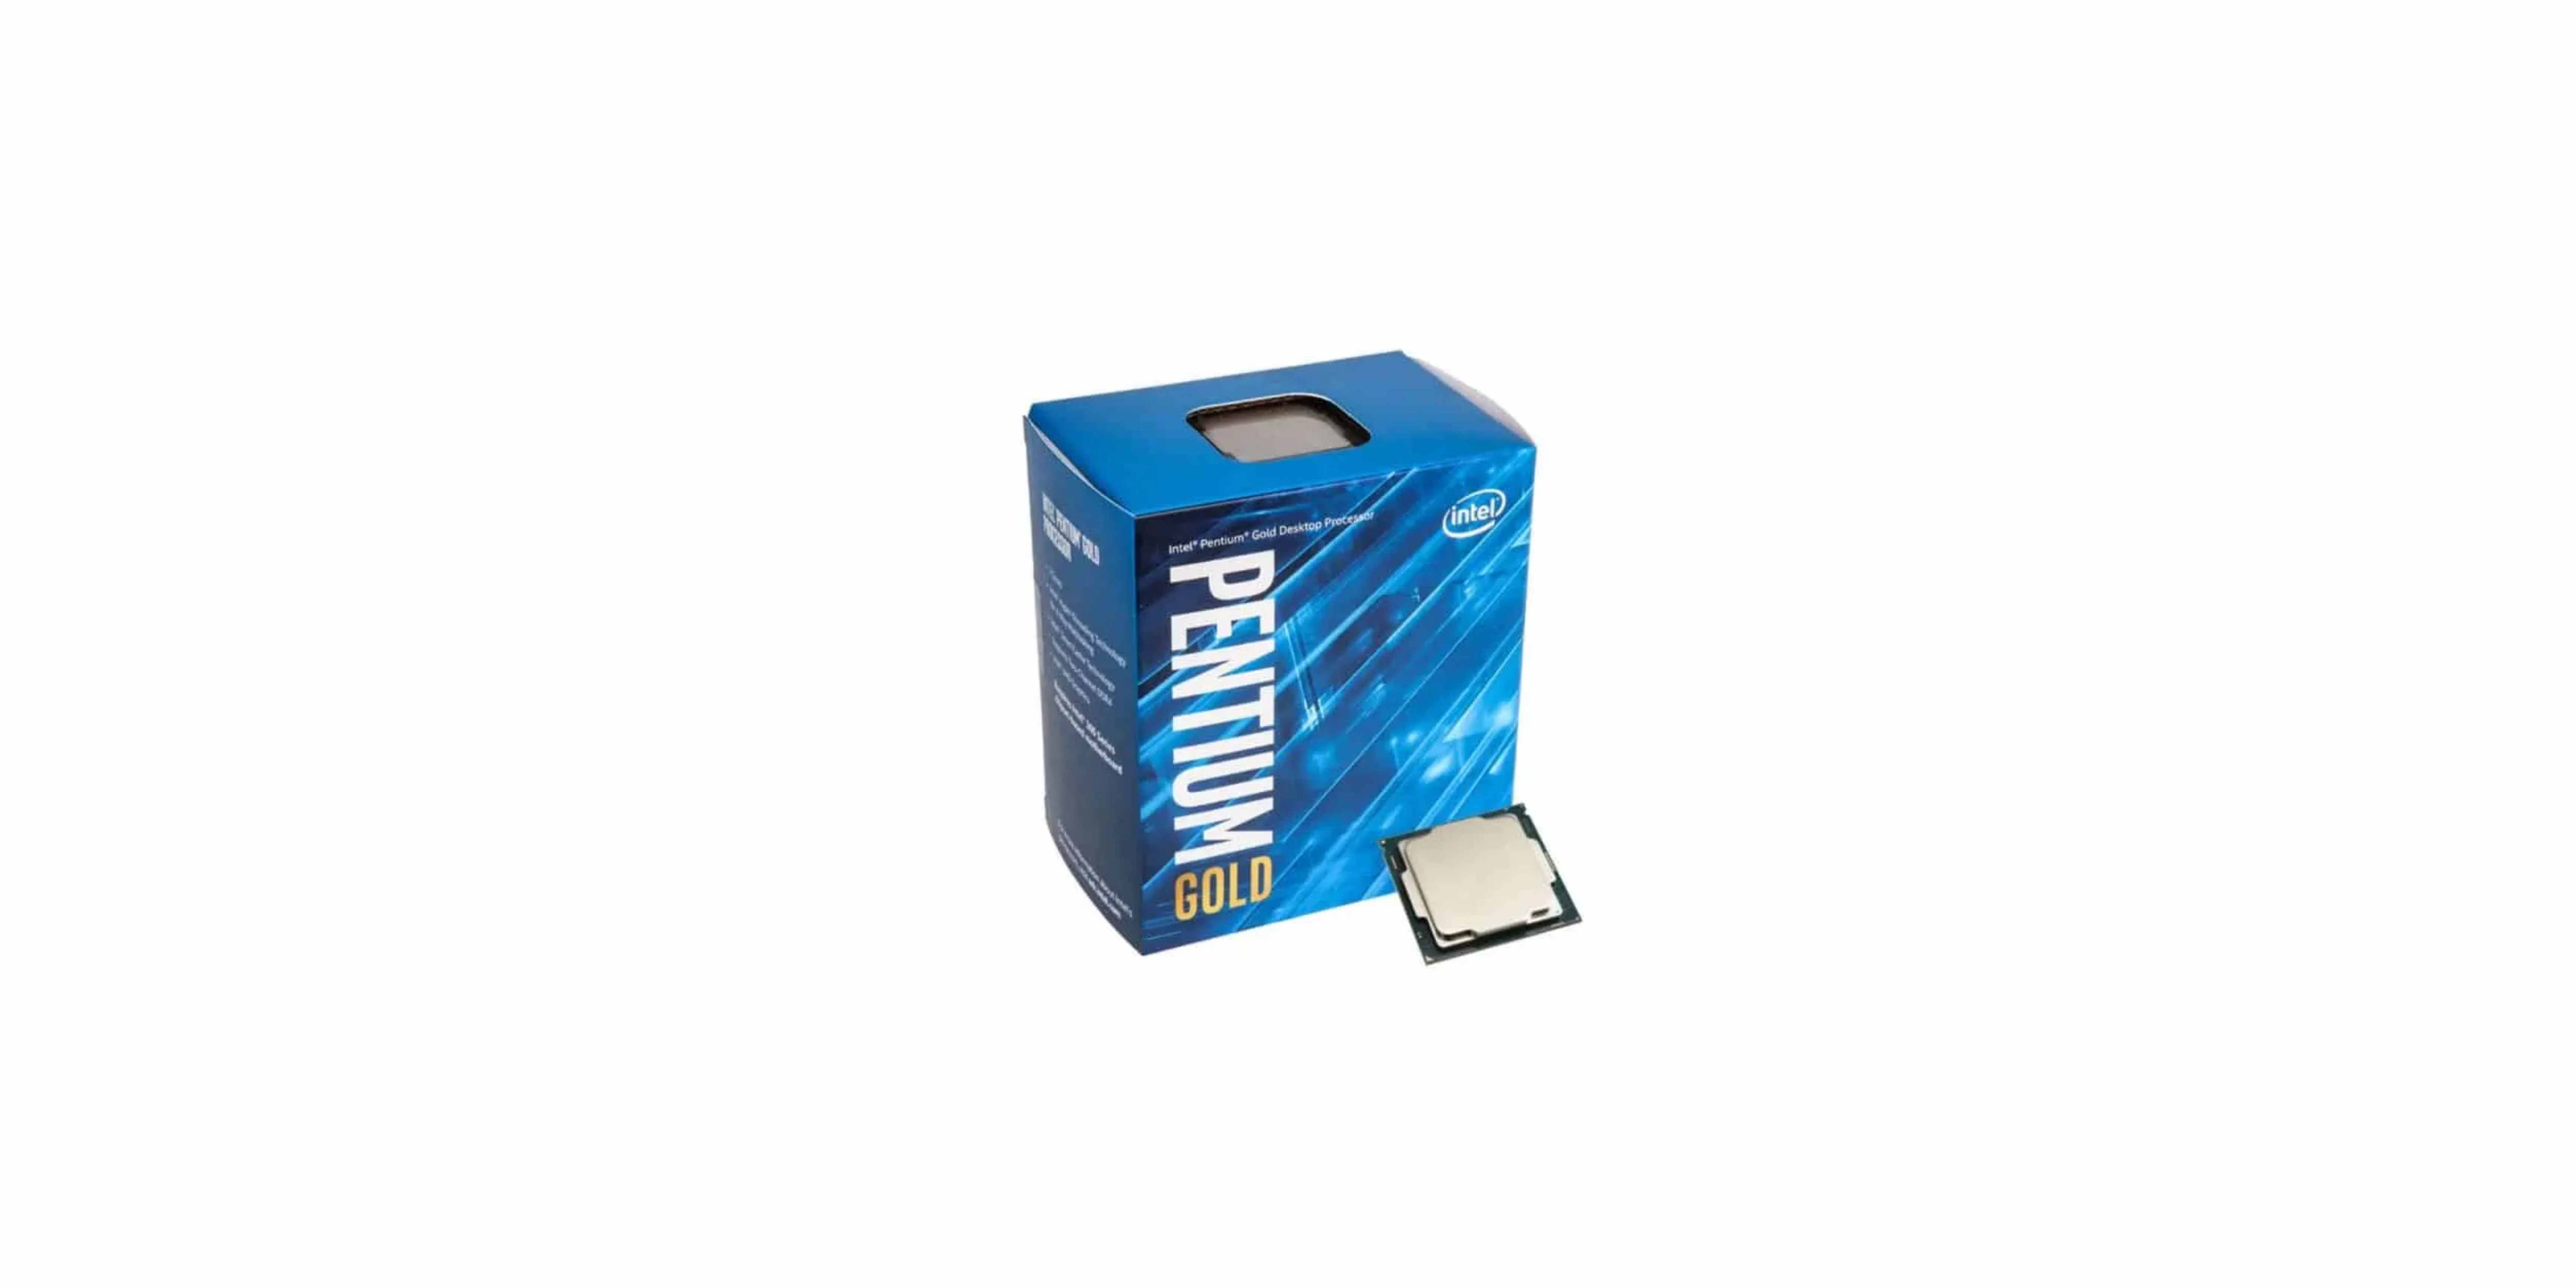 Intel Pentium Gold G-6400, 2 cores and 4 threads CPU